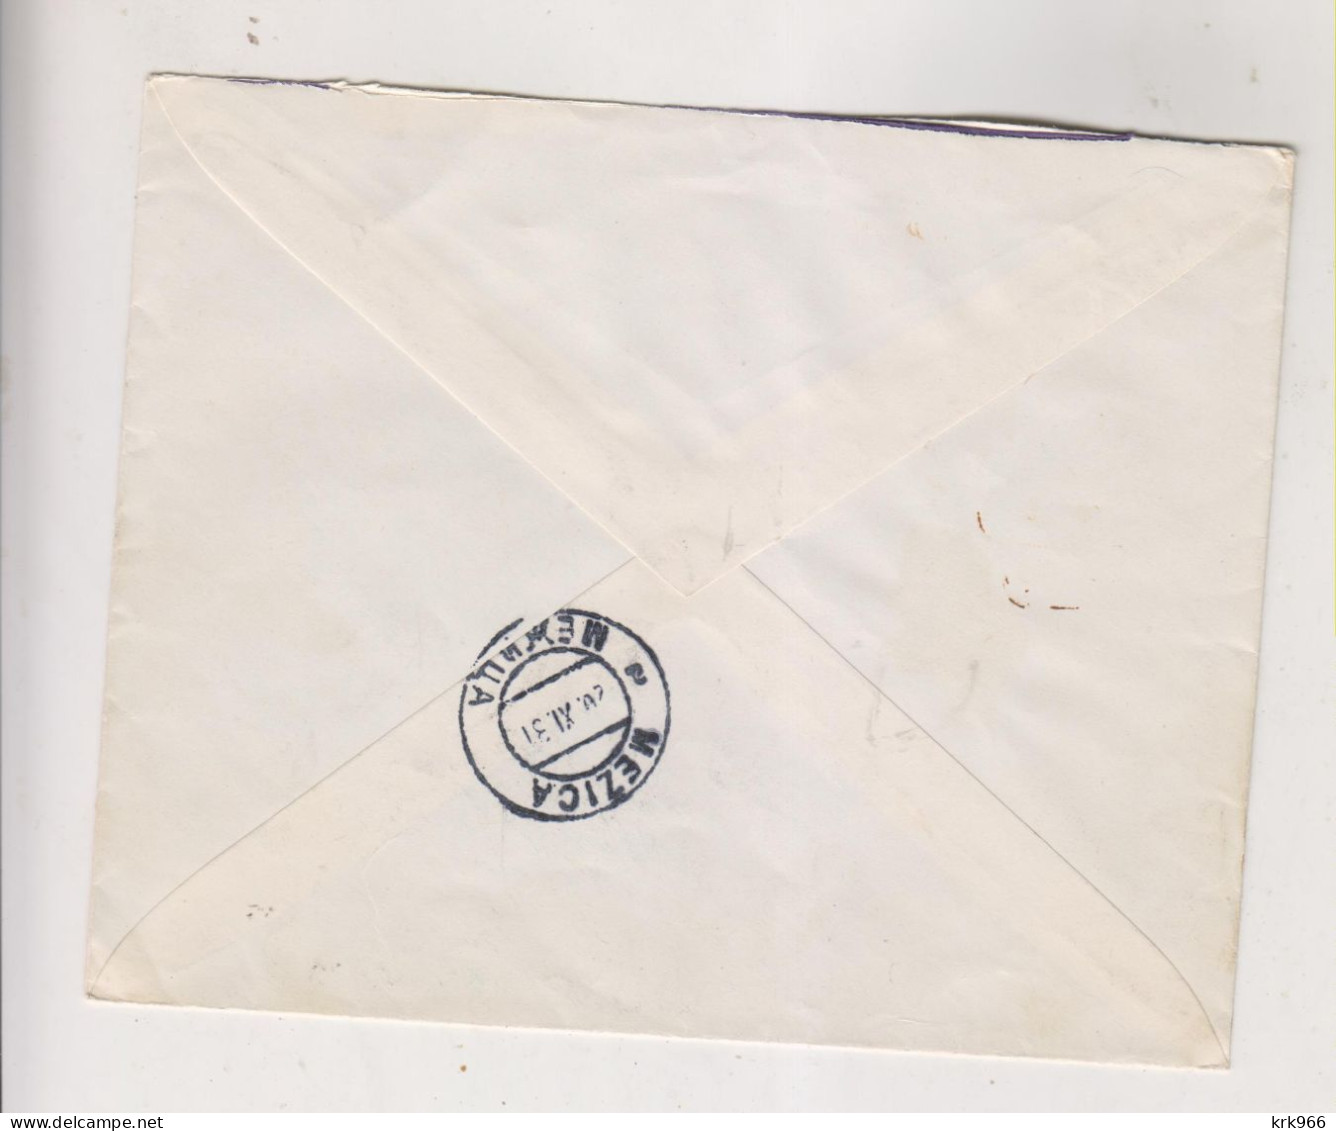 YUGOSLAVIA 1931 PREVALJE Registered   Cover To MEZICA - Lettres & Documents